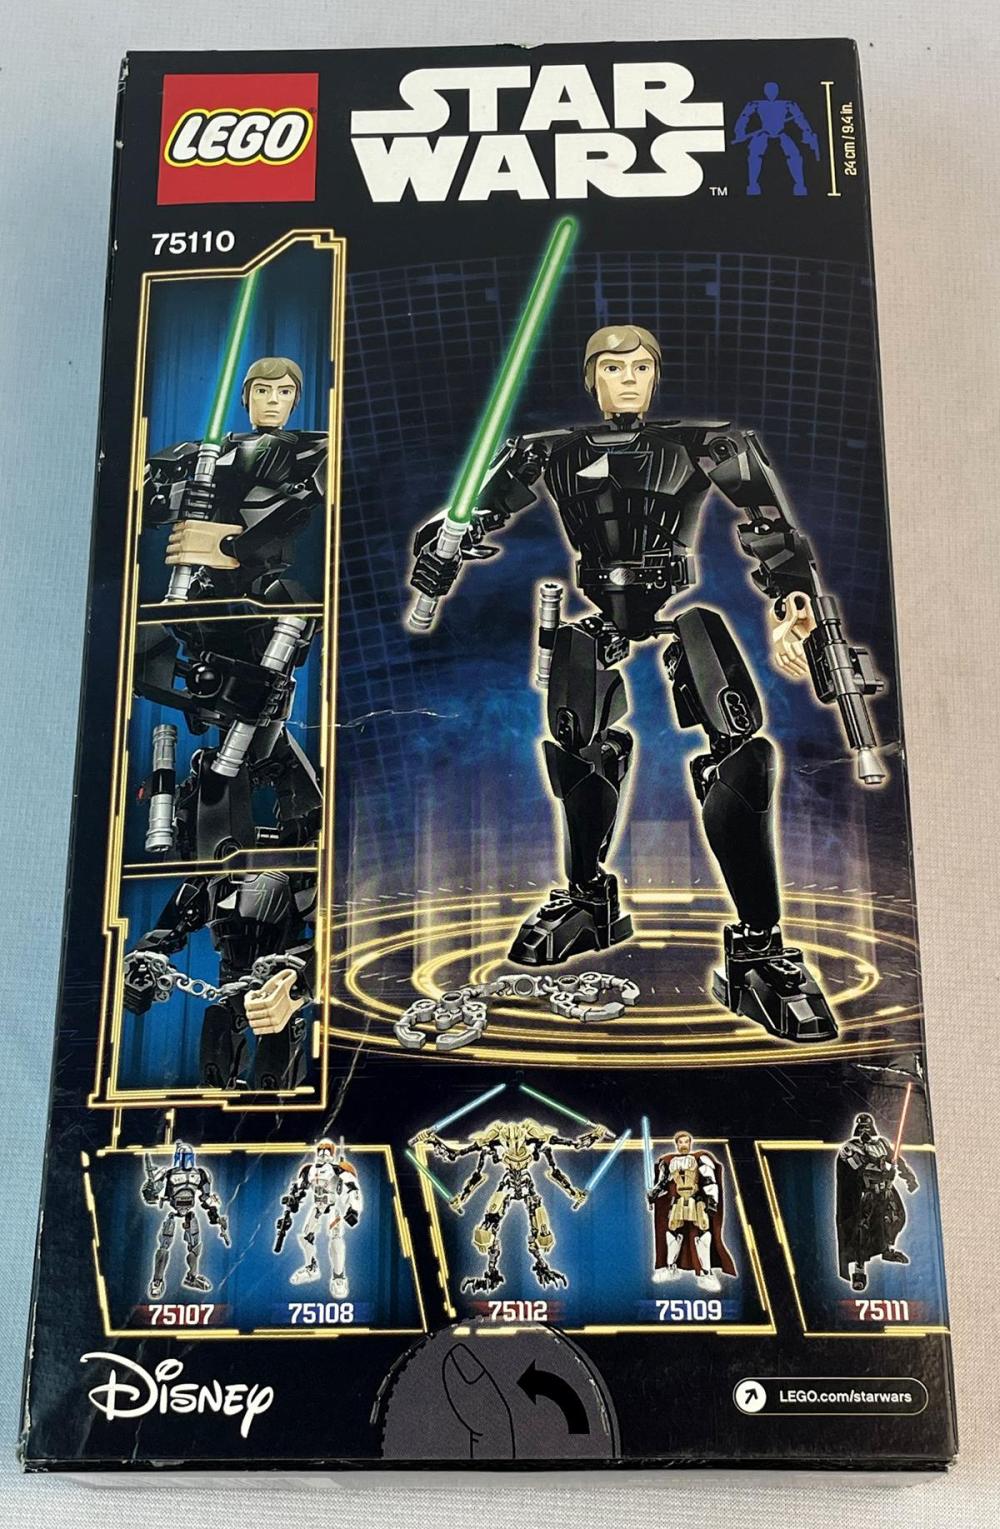 2015 LEGO Star Wars 75110 Luke Skywalker SEALED